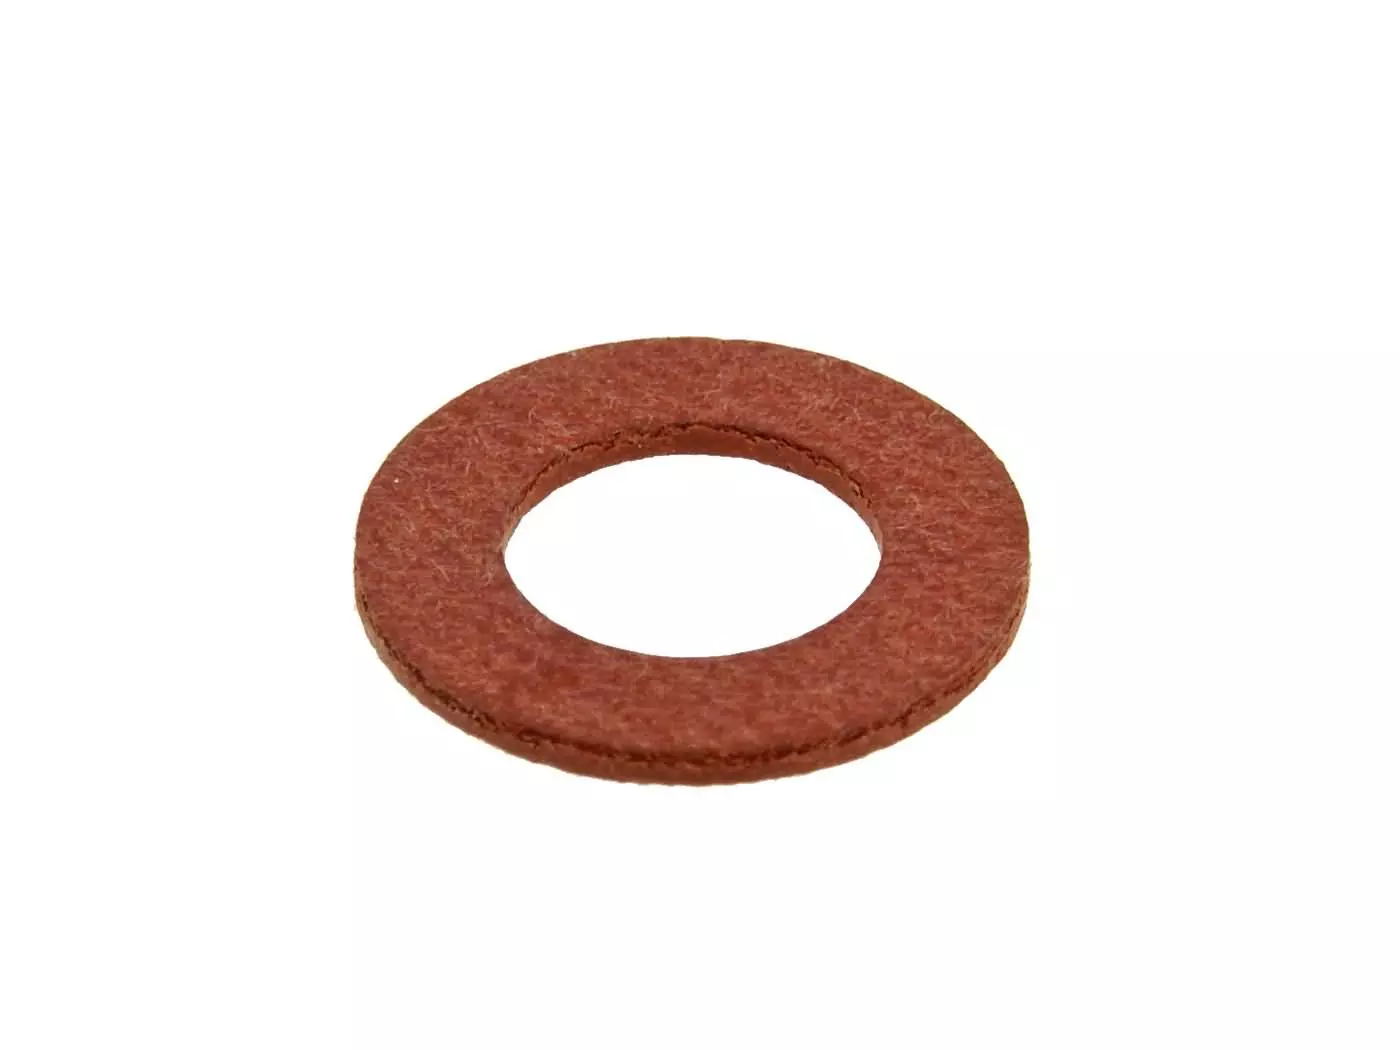 Fiber Seal Ring Naraku 8x15x1mm